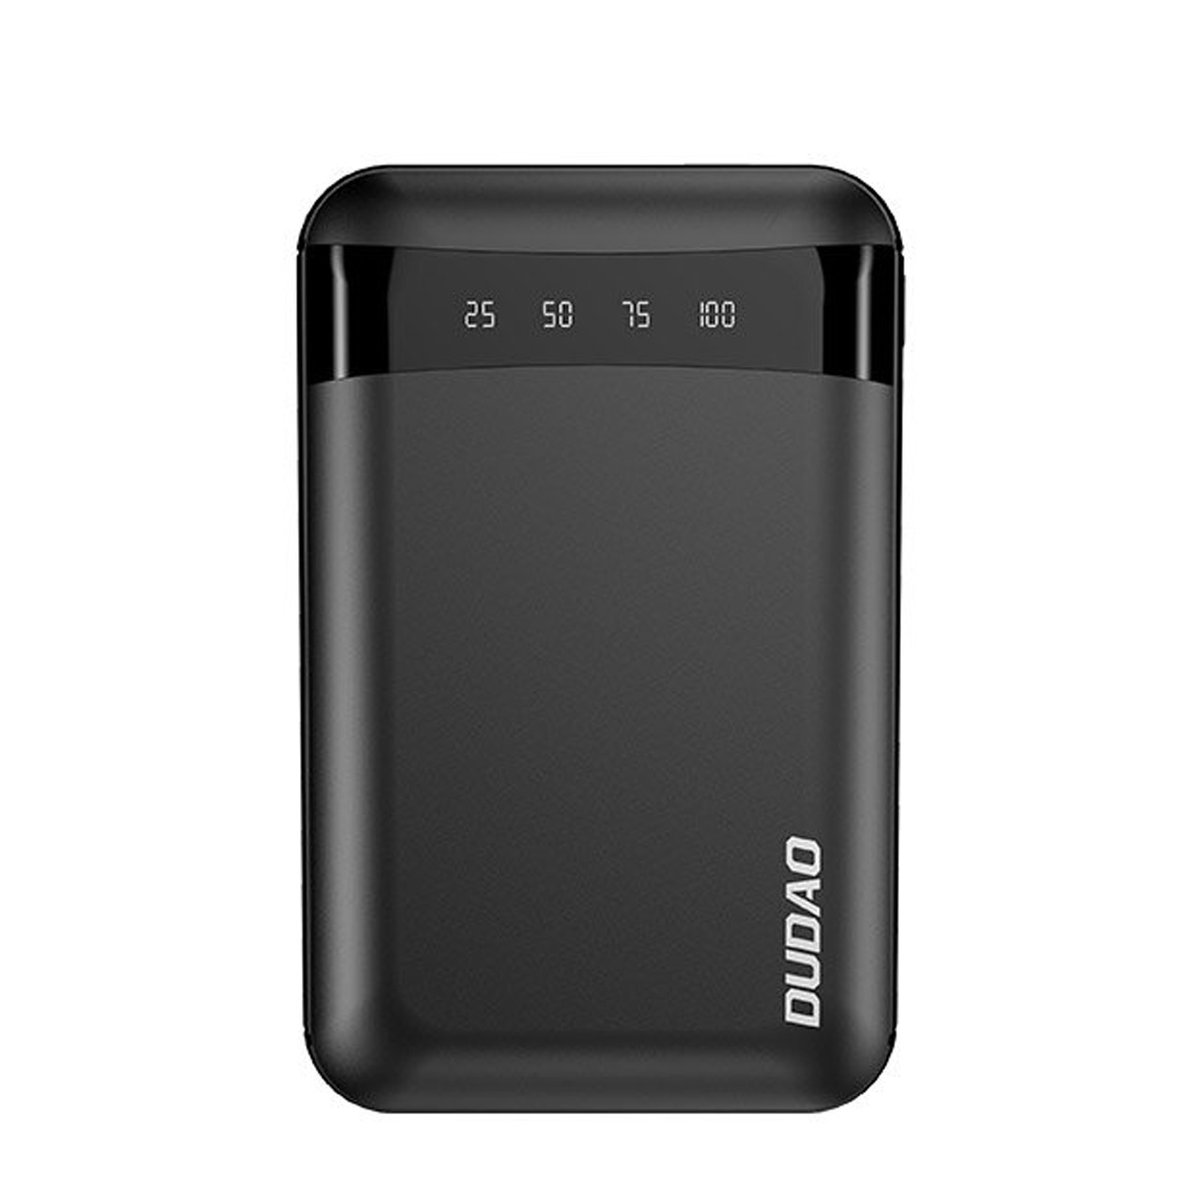 Dudao przenośny power bank USB 10000mAh czarny (K3Pro mini) hurtel-82318-0